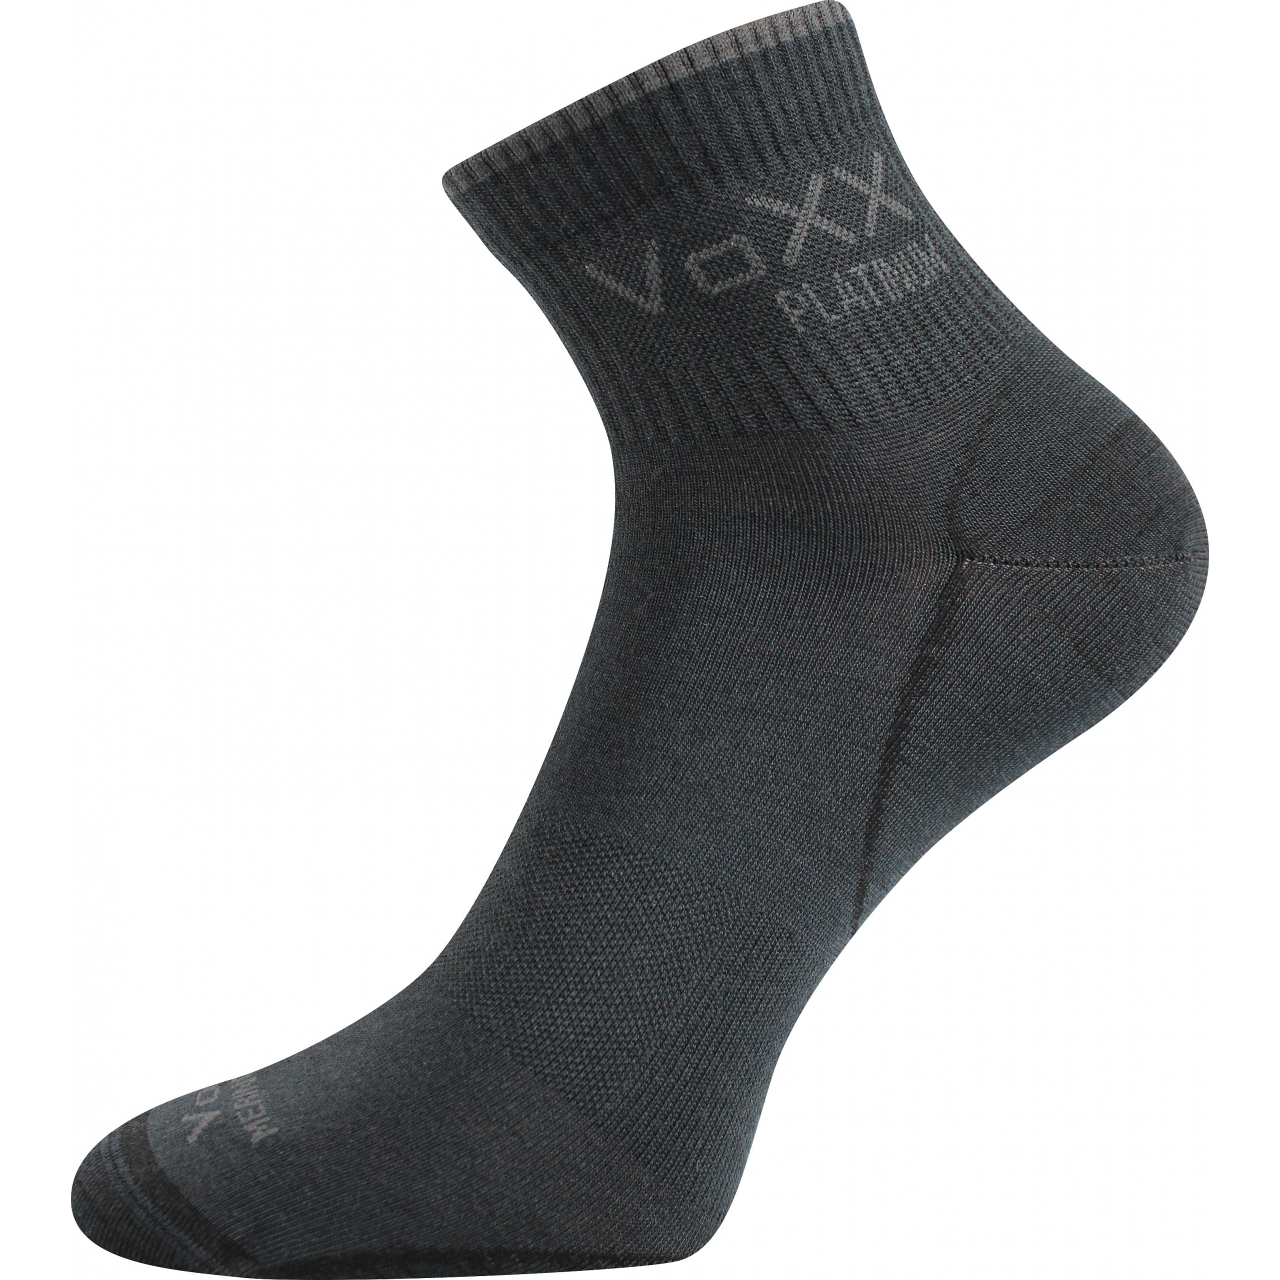 Ponožky klasické unisex Voxx Radik - tmavě šedé, 35-38